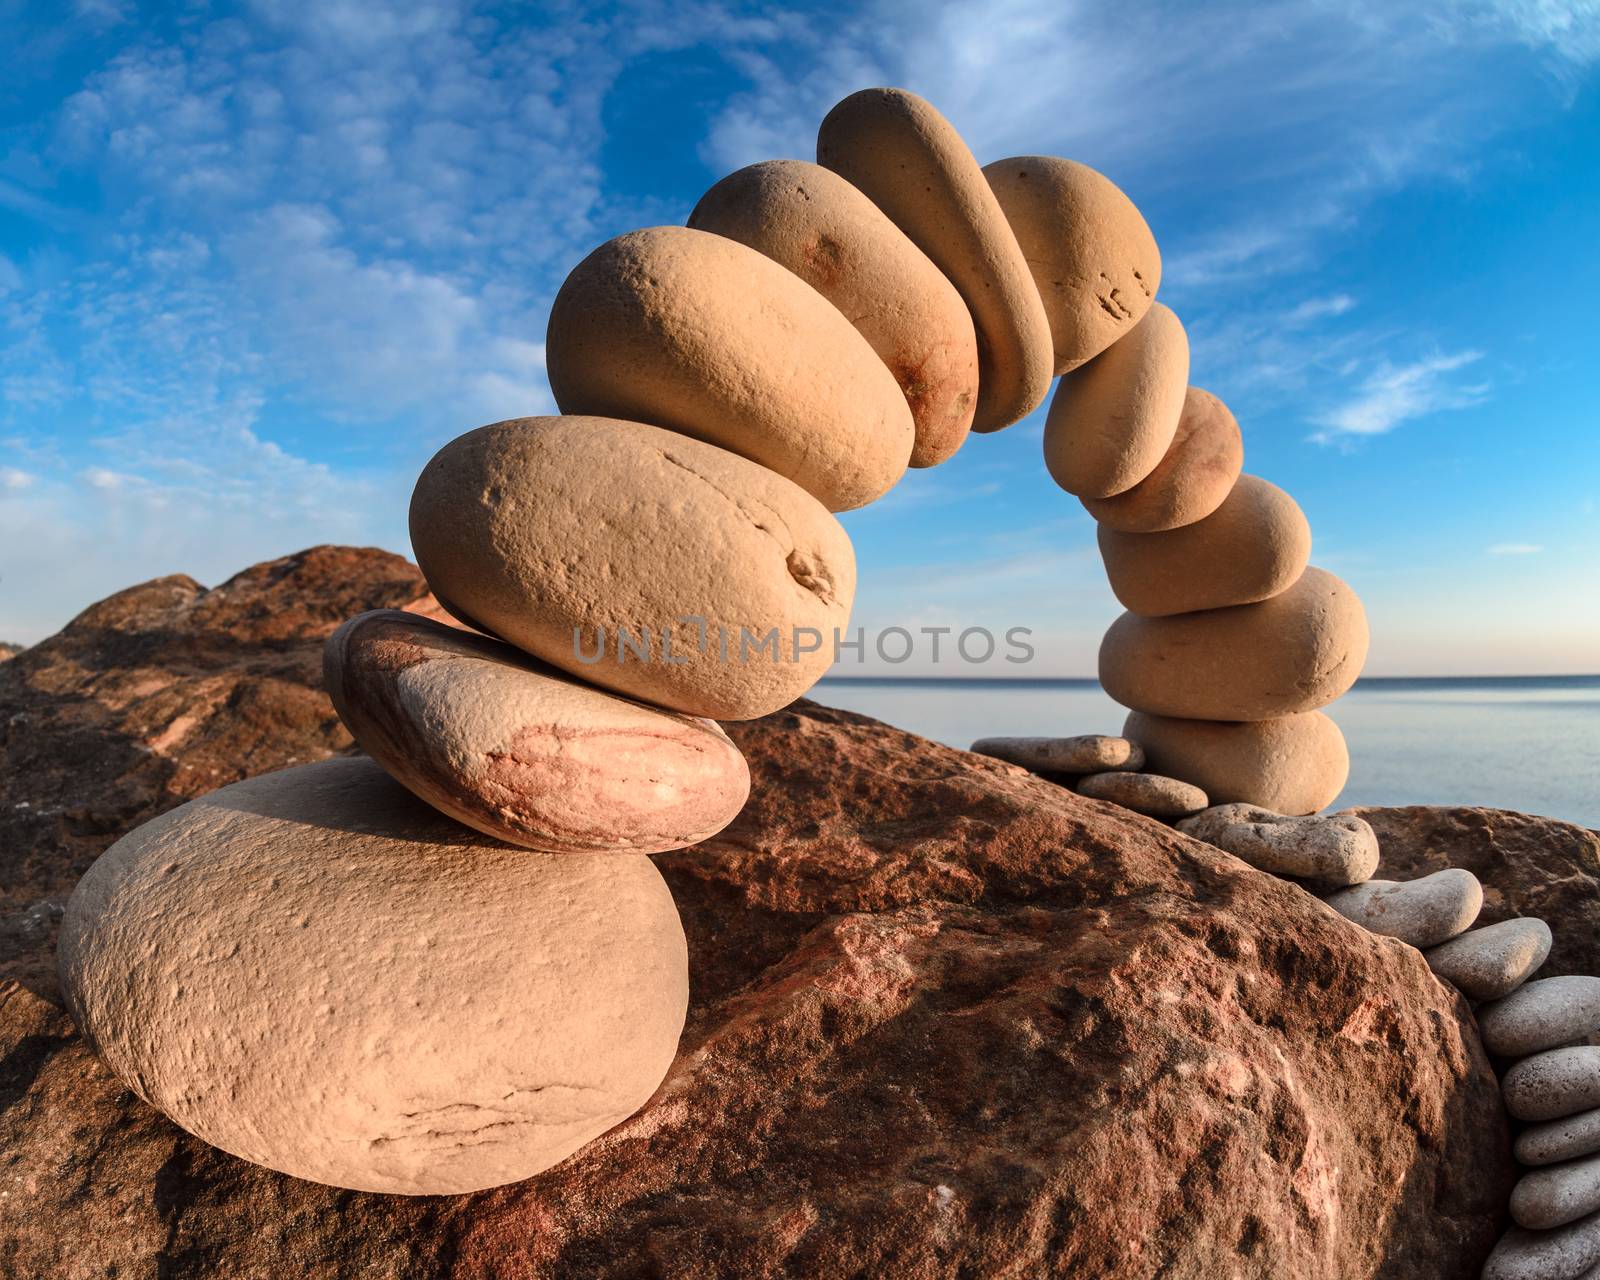 Arch on the stony coast by styf22